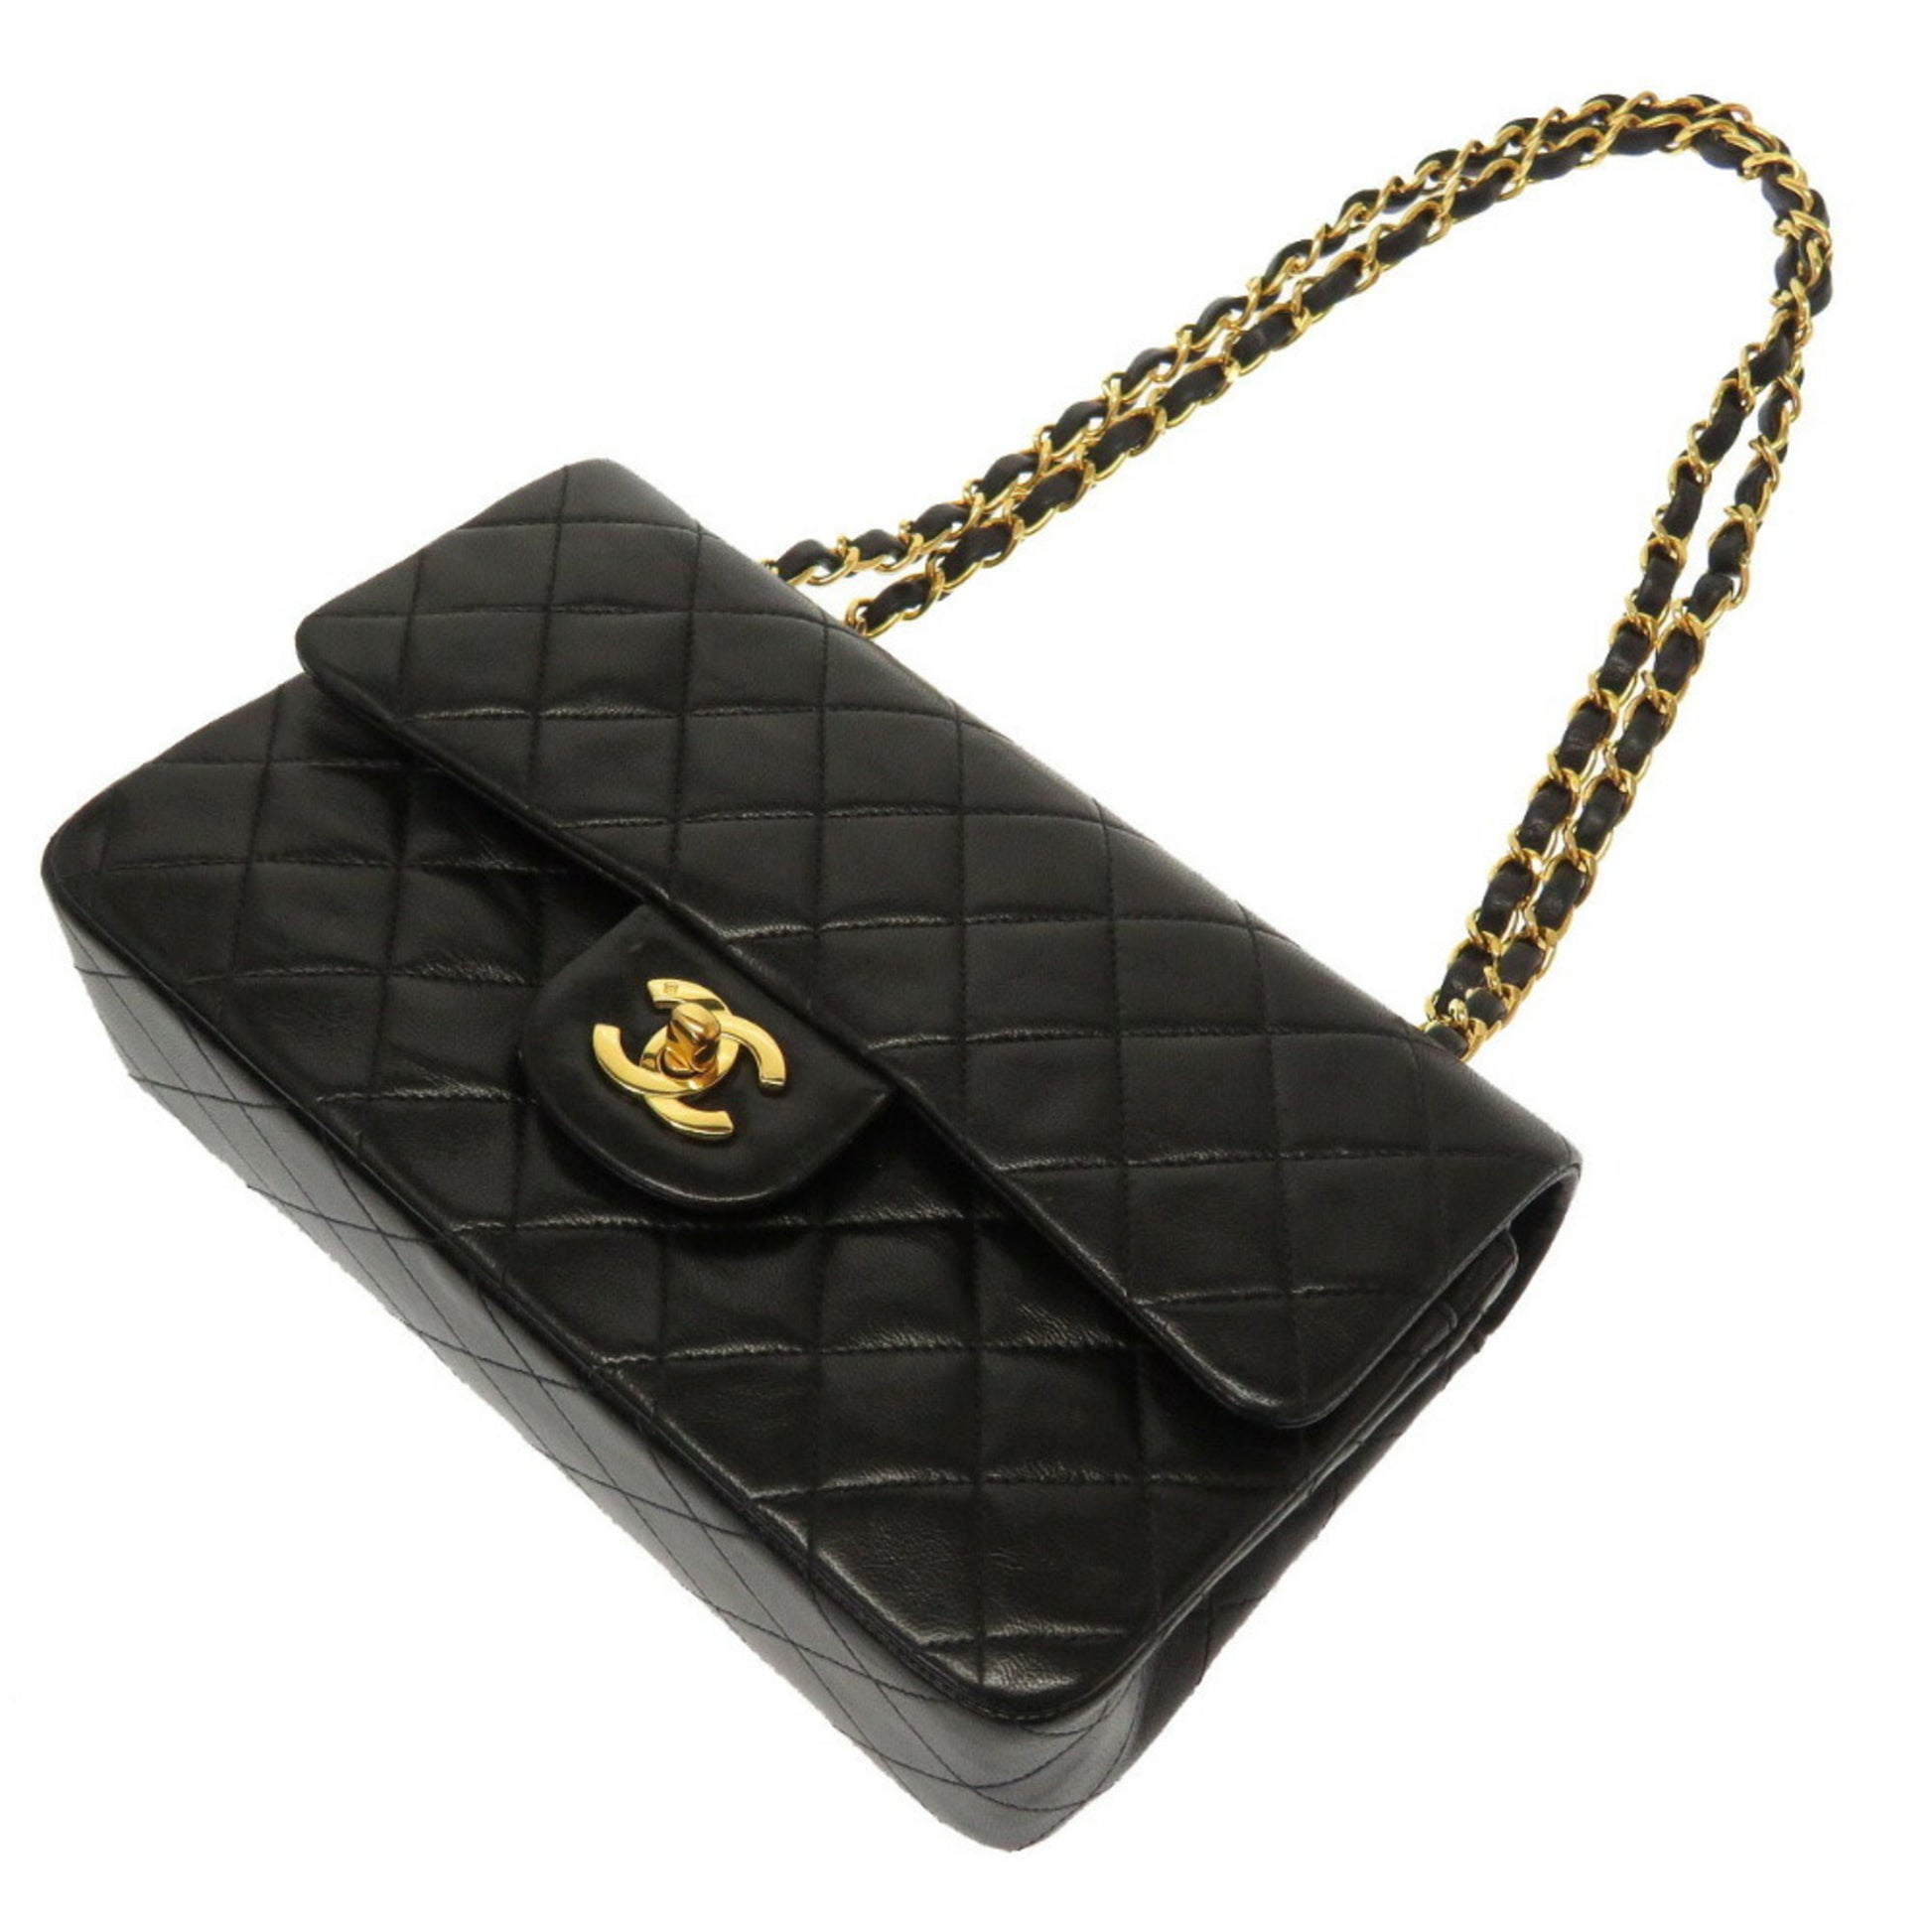 chanel black leather handbag shoulder